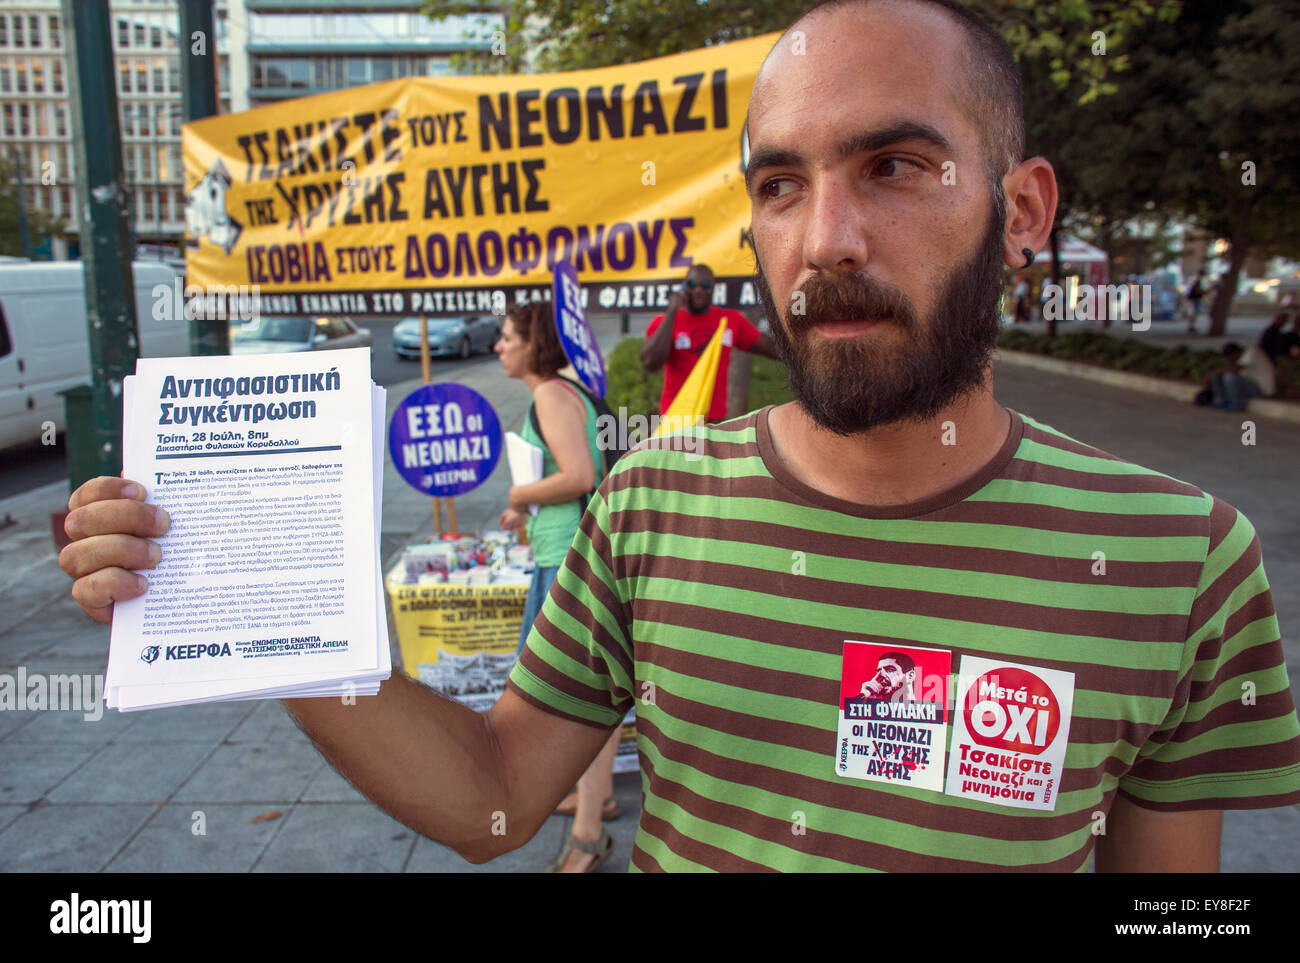 Tausende Menschen demonstrieren in Athen gegen die EU verhängt die Erhöhung der Mehrwertsteuer auf Produkte und Dienstleistungen. Das griechische Parlament v Stockfoto